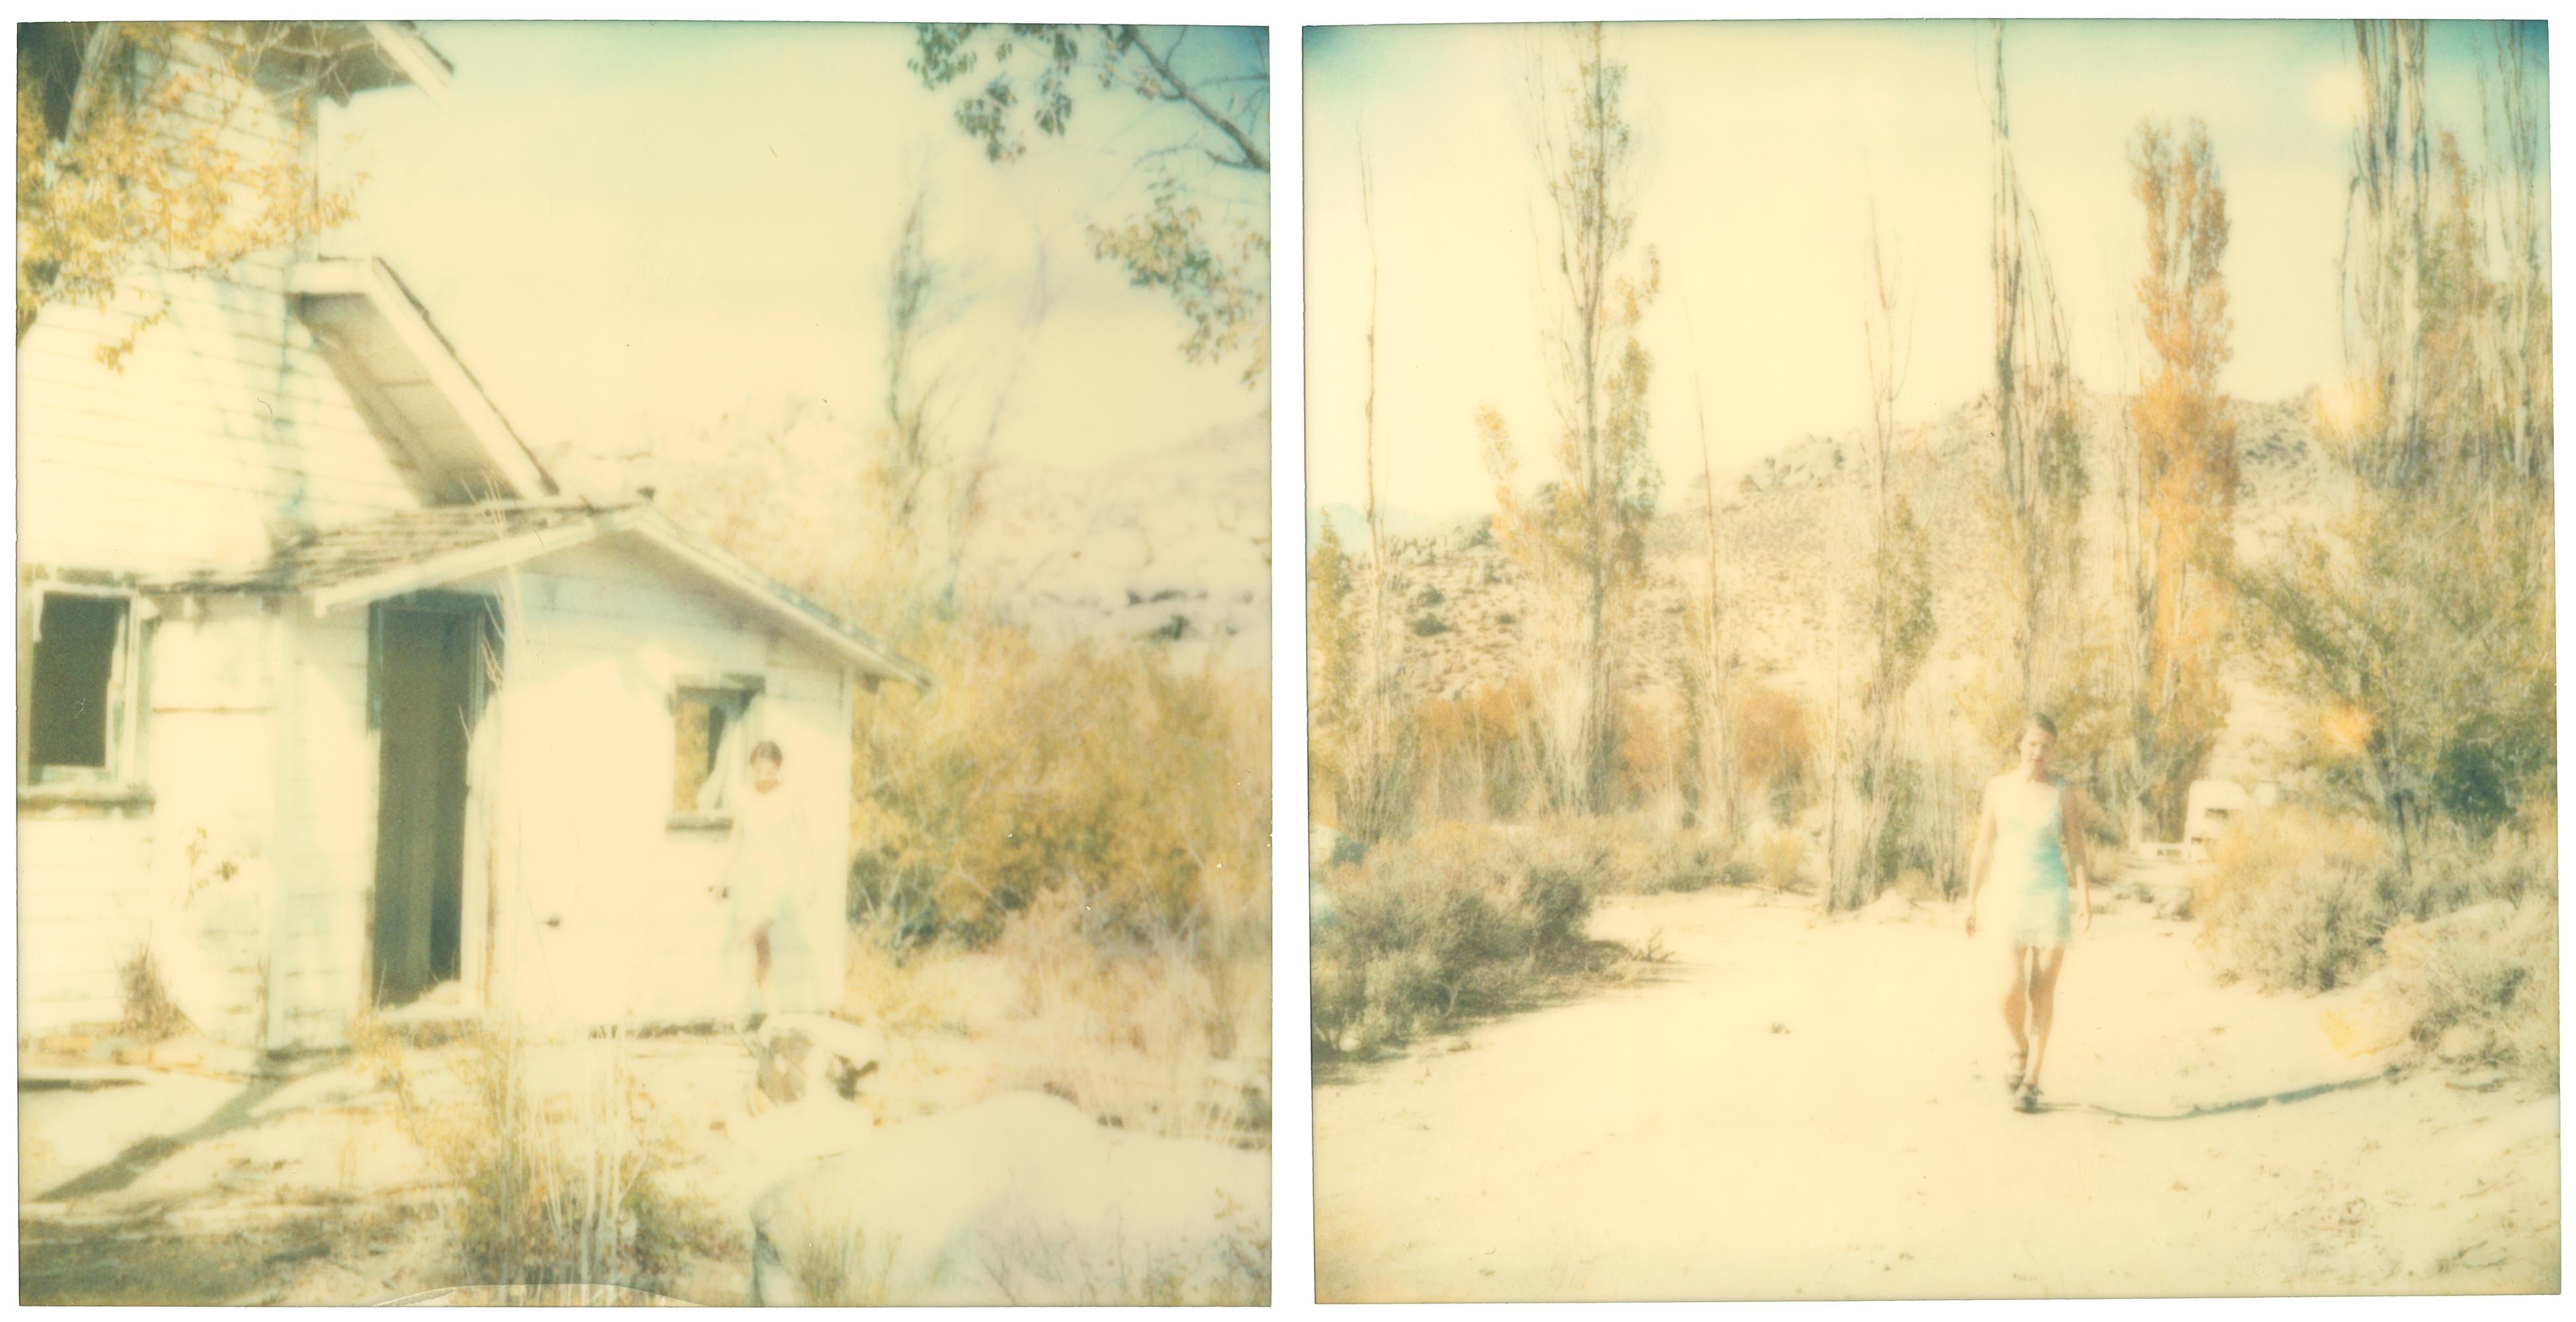 Stefanie Schneider Landscape Photograph - Last Season (Wastelands), diptych, analog